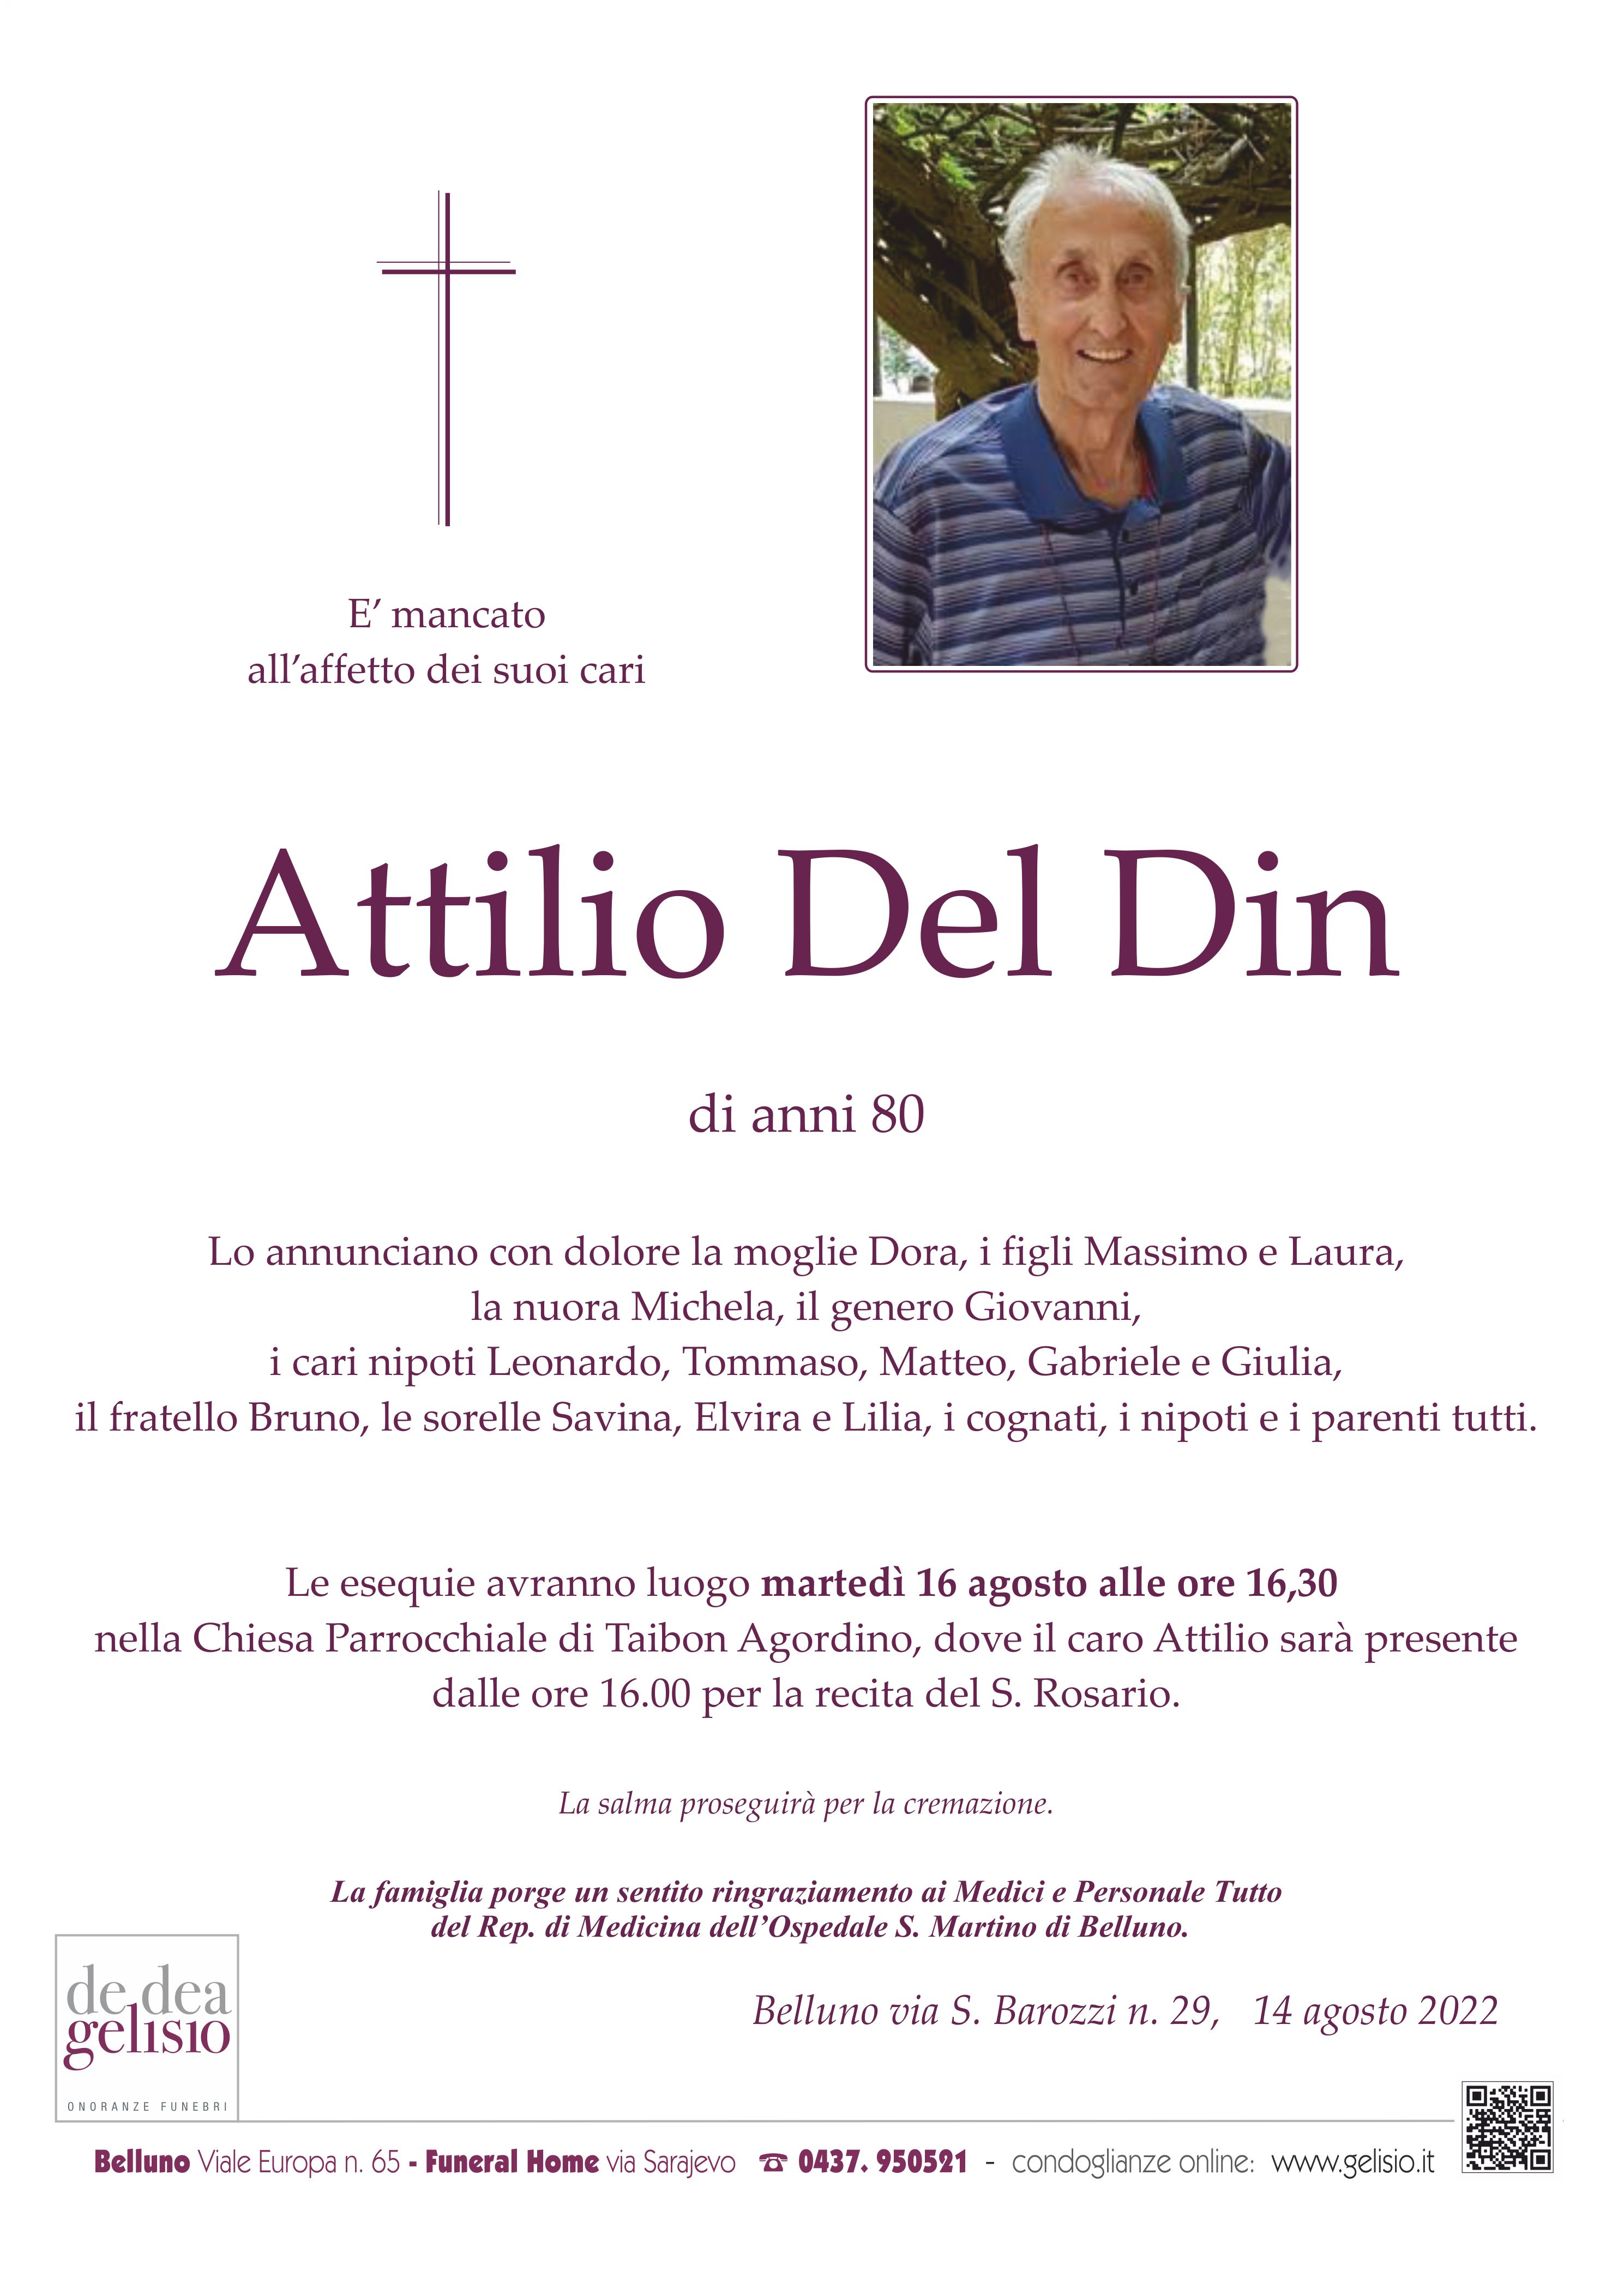 Del Din Attilio